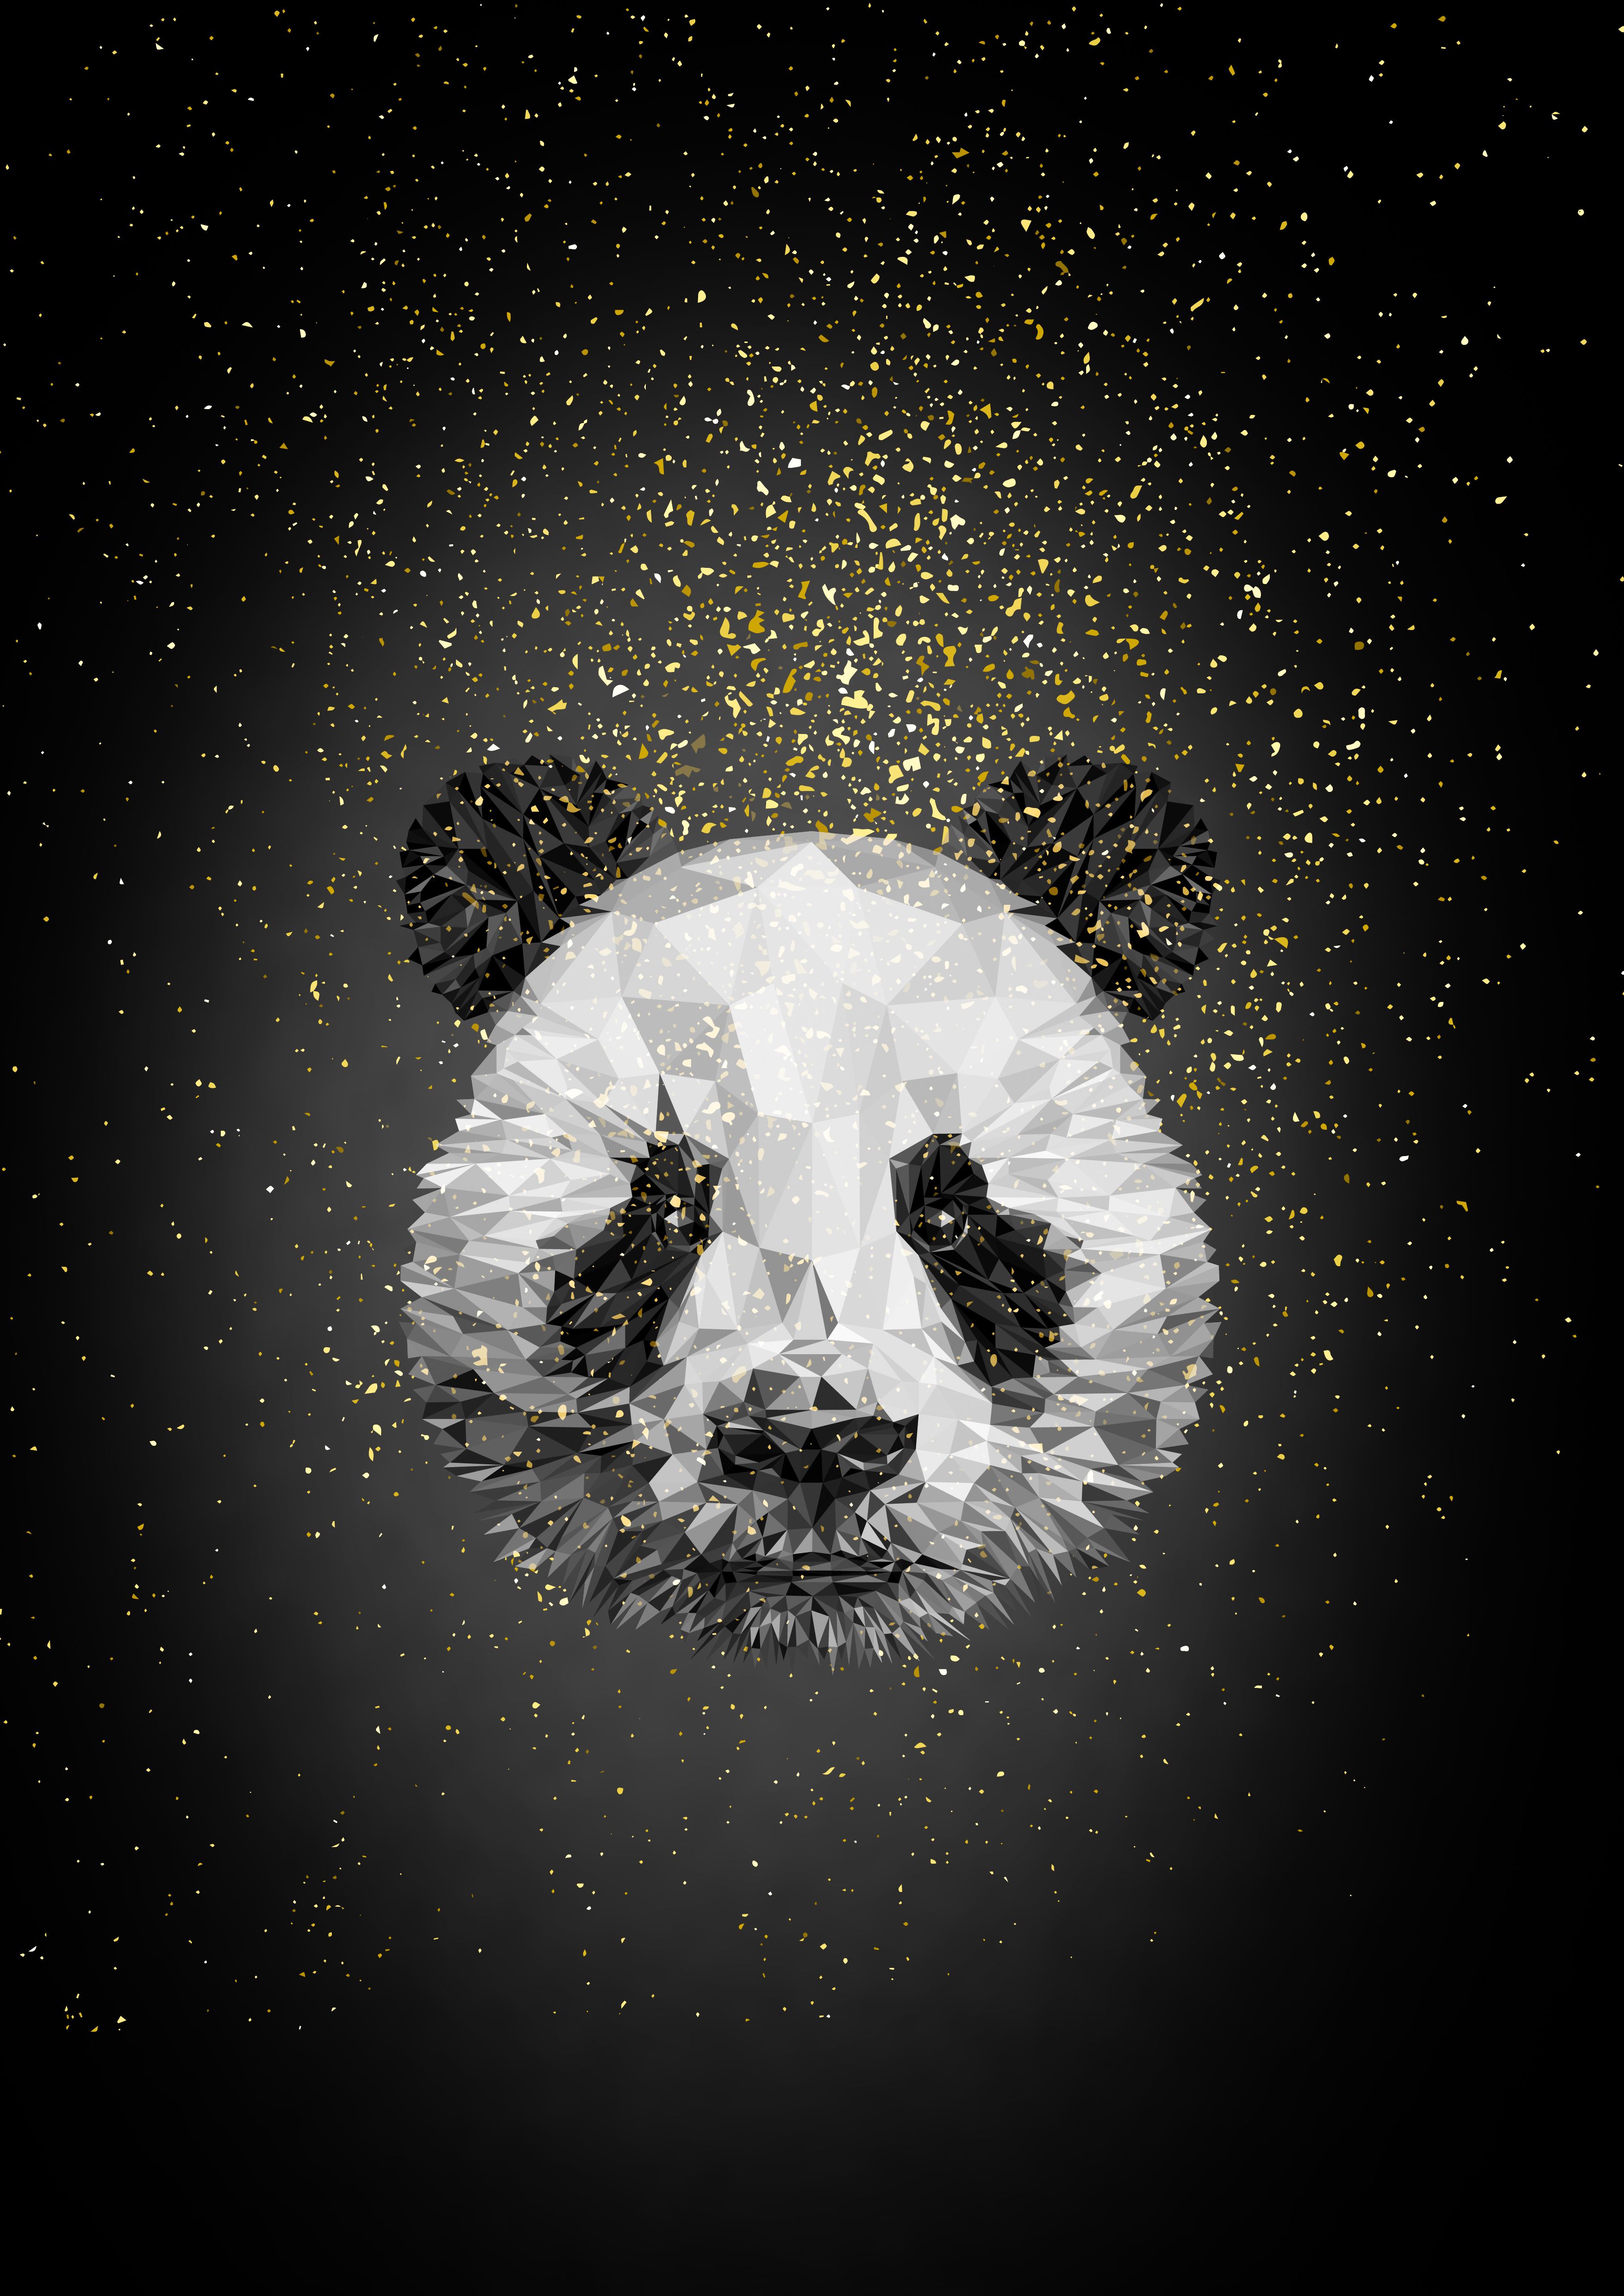 Dark Panda Wallpapers 4k Hd Dark Panda Backgrounds On Wallpaperbat